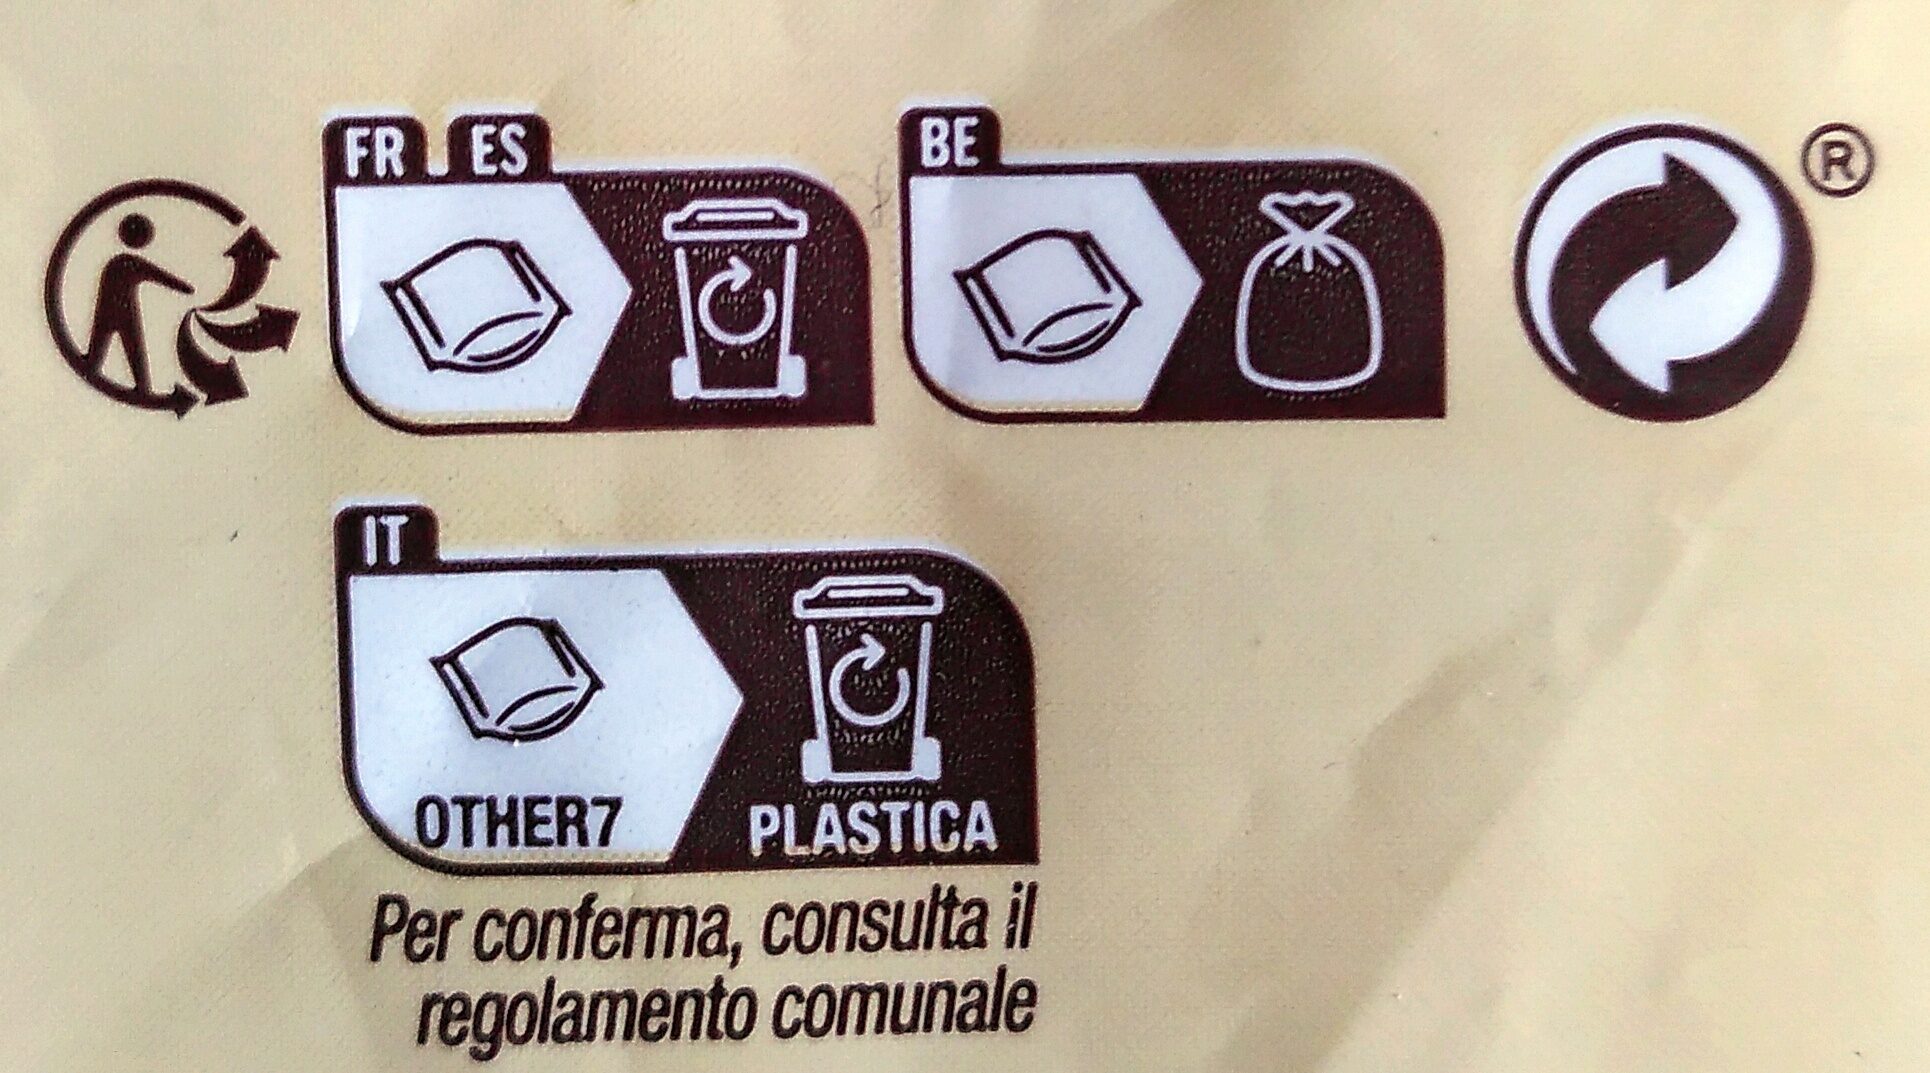 Gnocchi aux pommes de terre - Instruction de recyclage et/ou informations d'emballage